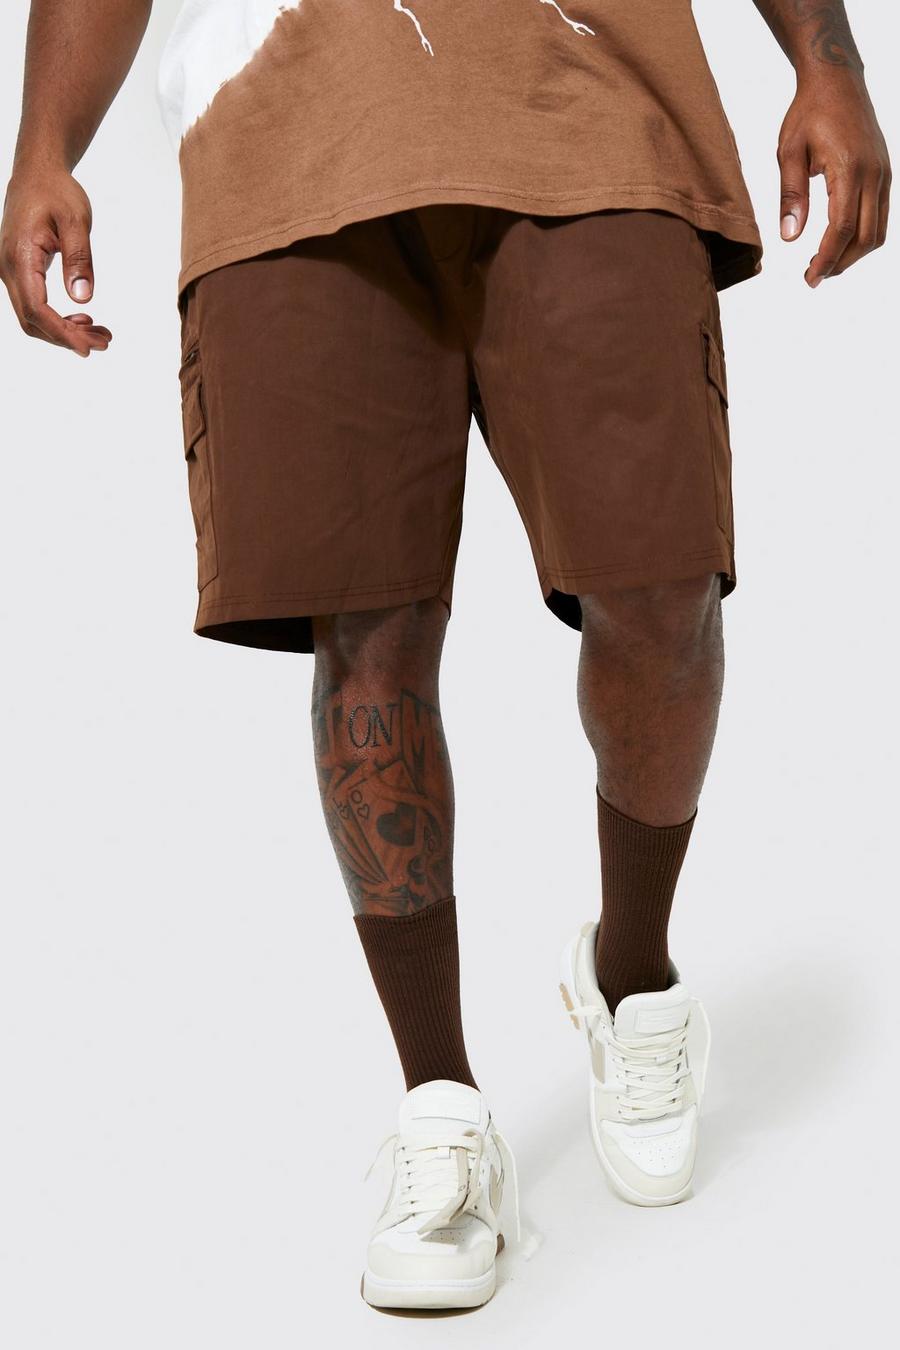 Pantalón corto Plus cargo de tela shell gruesa con etiqueta de tela, Chocolate marrone